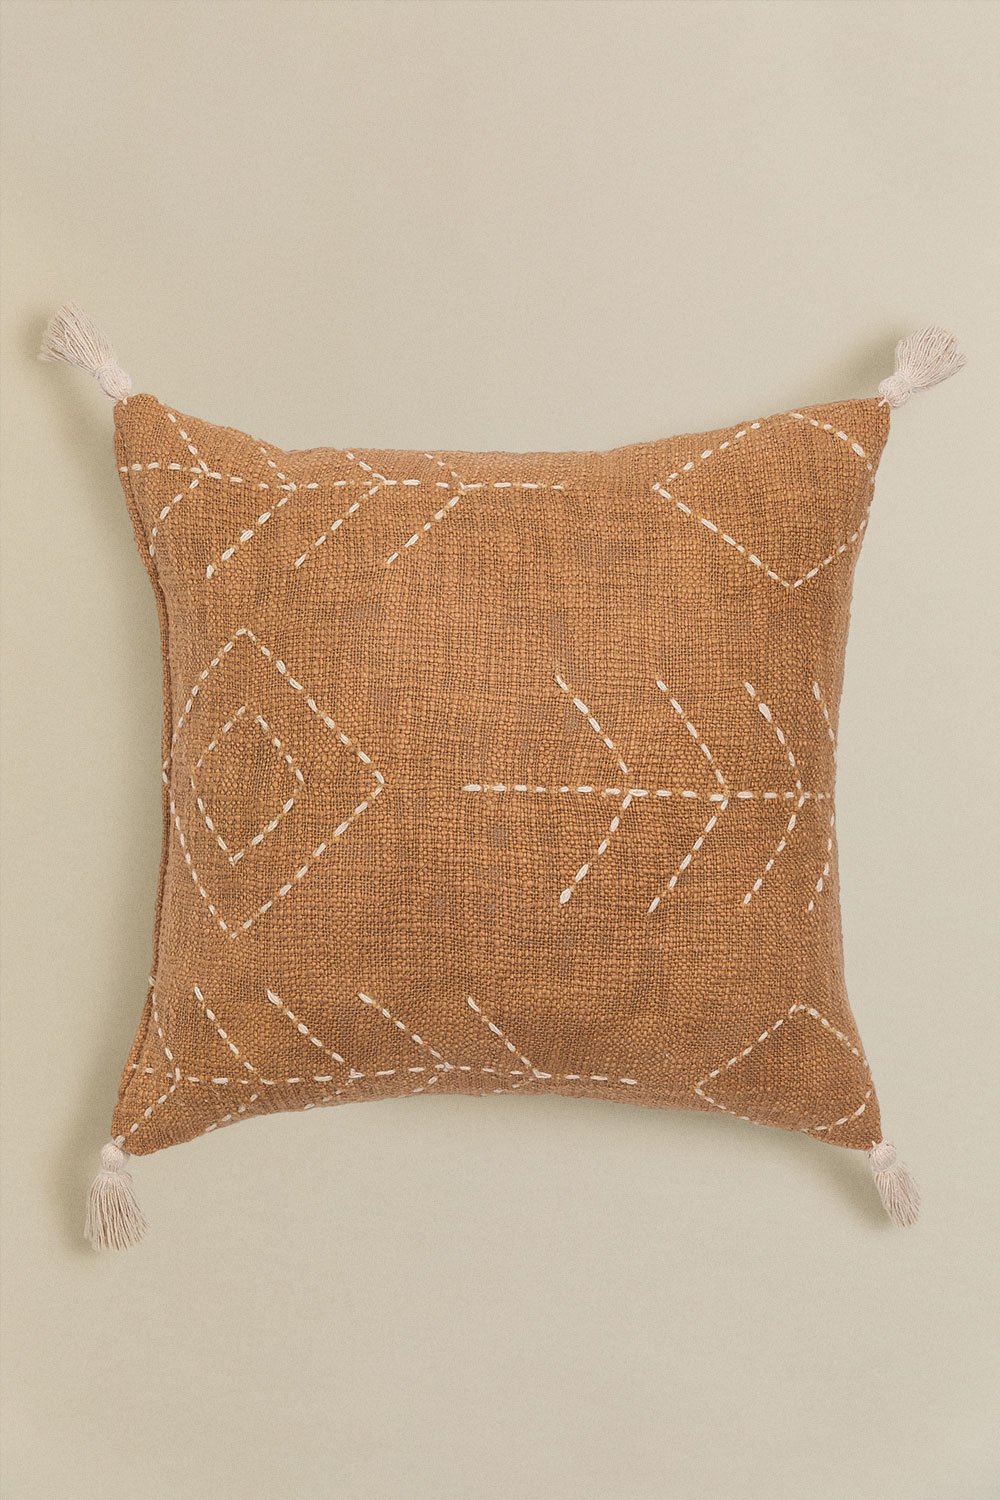 Kwadratowa poduszka z bawełny (45x45 cm) Lemes, obrazek w galerii 1